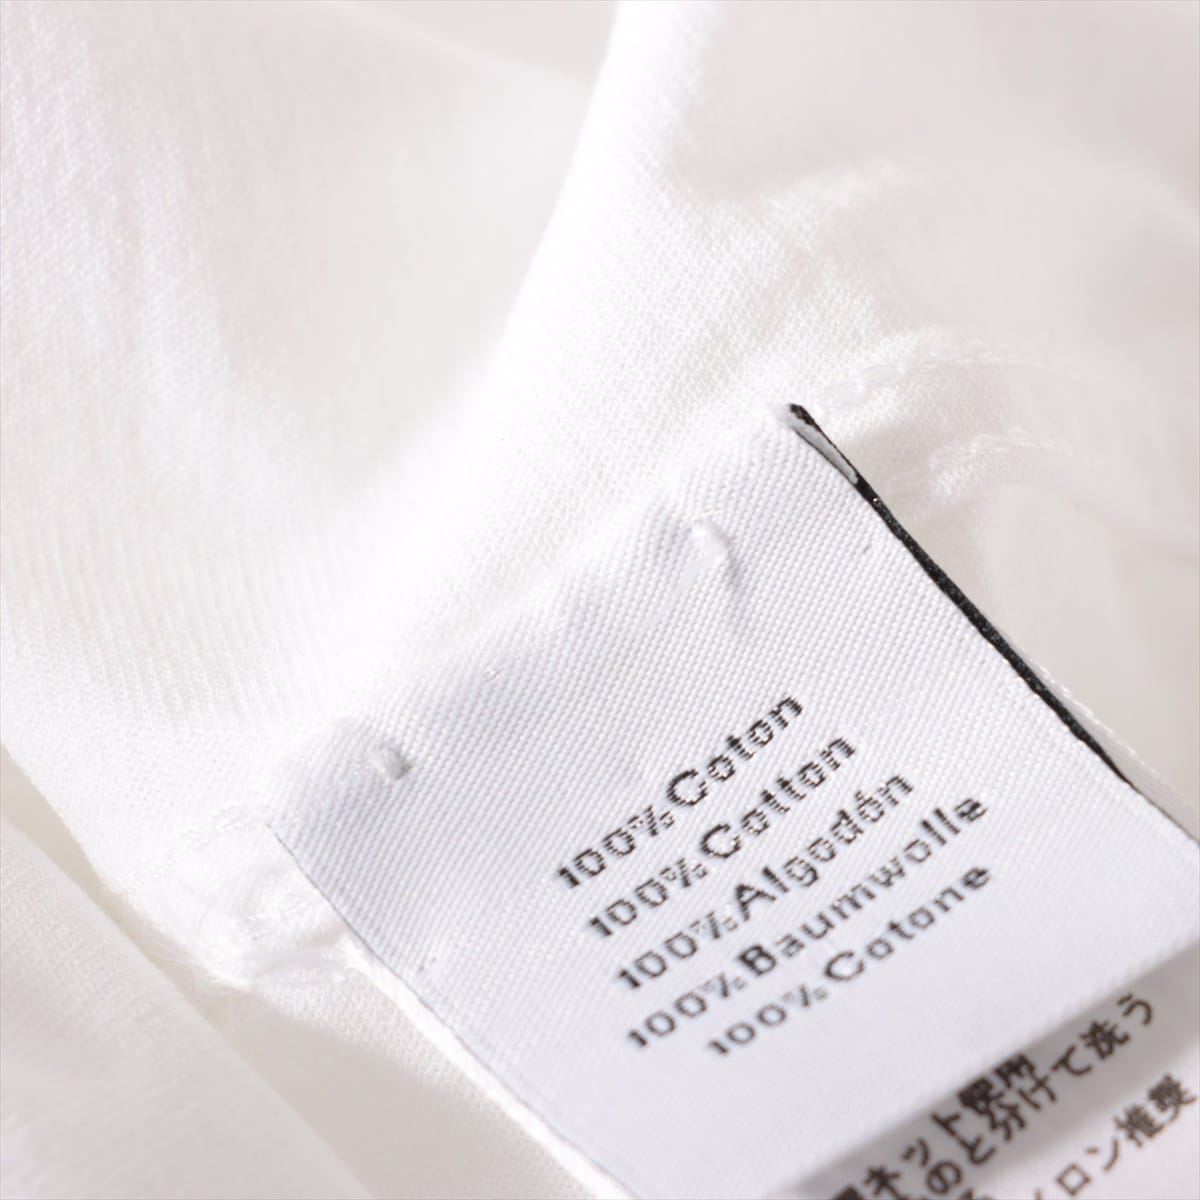 Hermès Cotton T-shirt XL Men's White